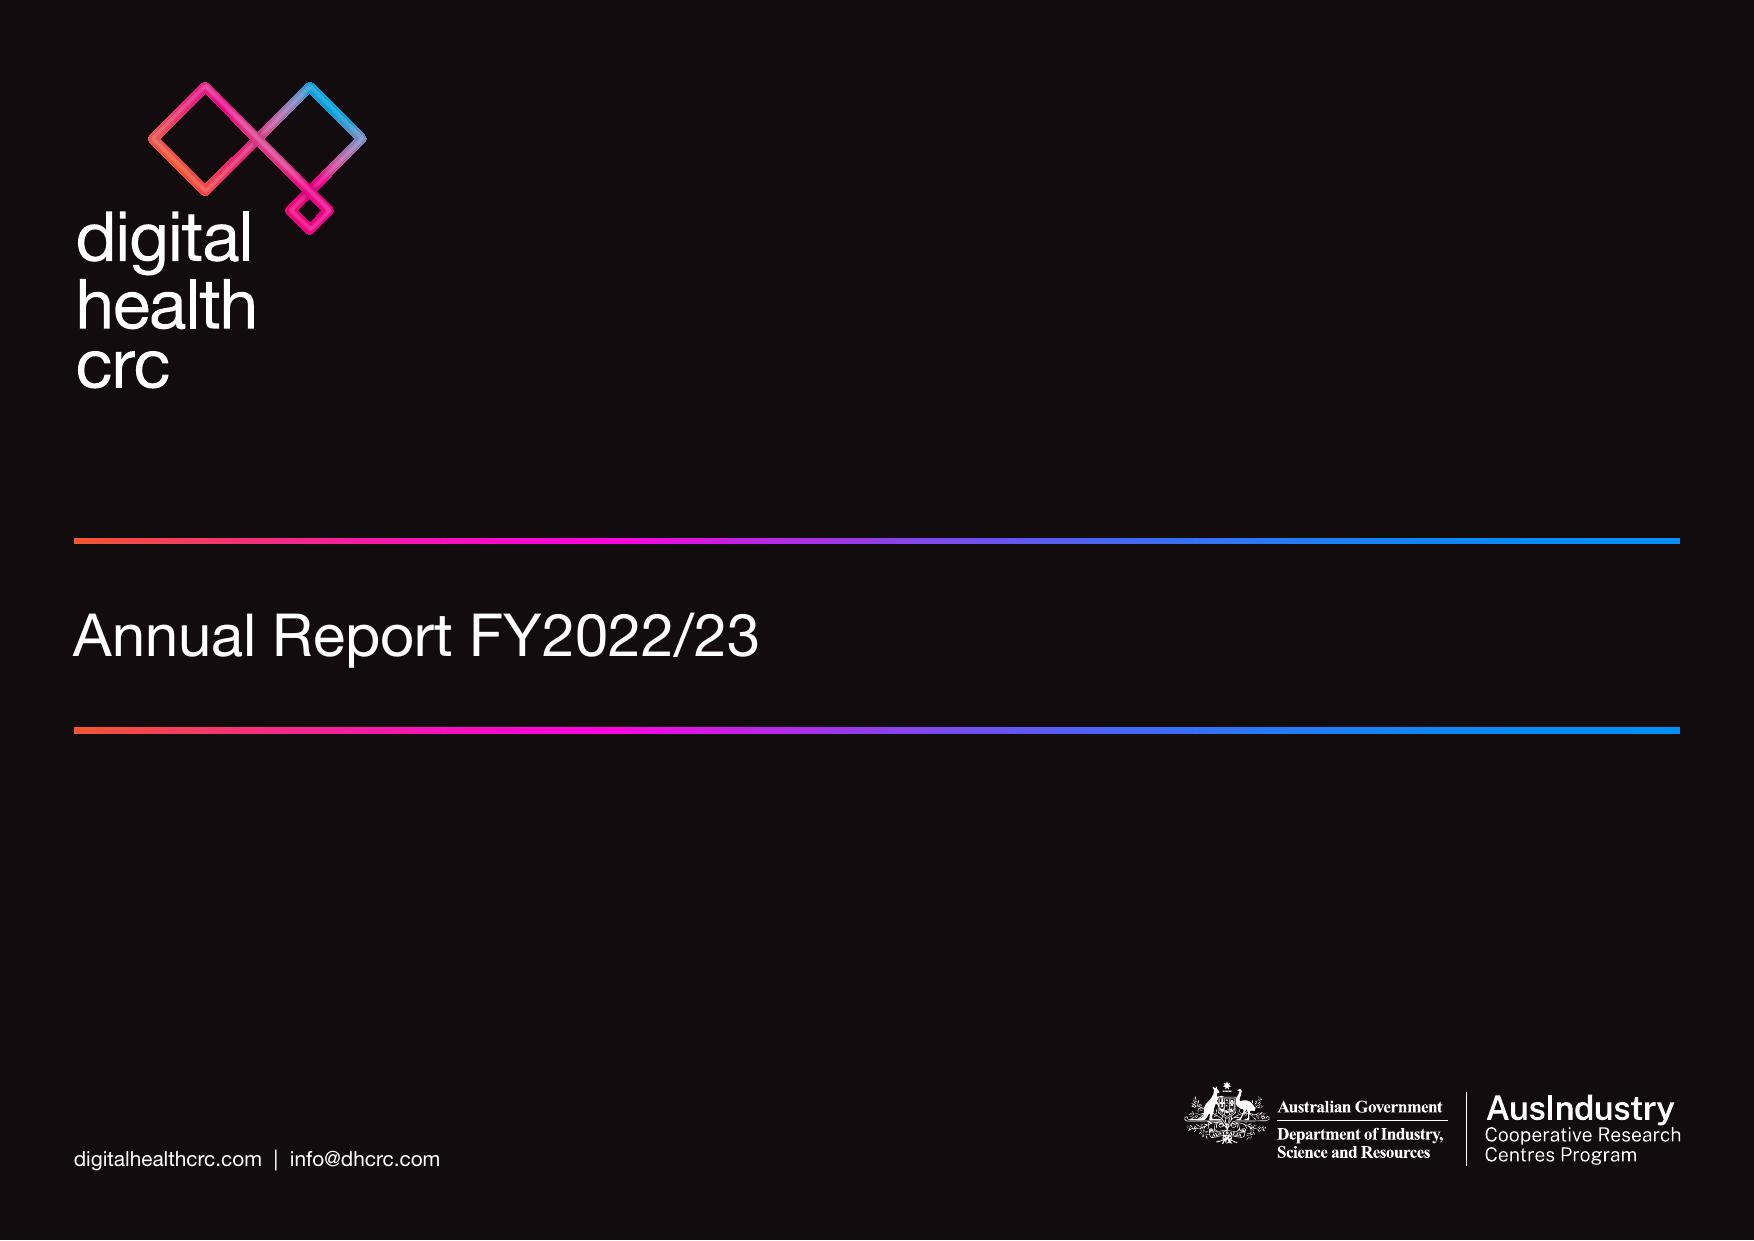 DIGITALHEALTHCRC 2023 Annual Report